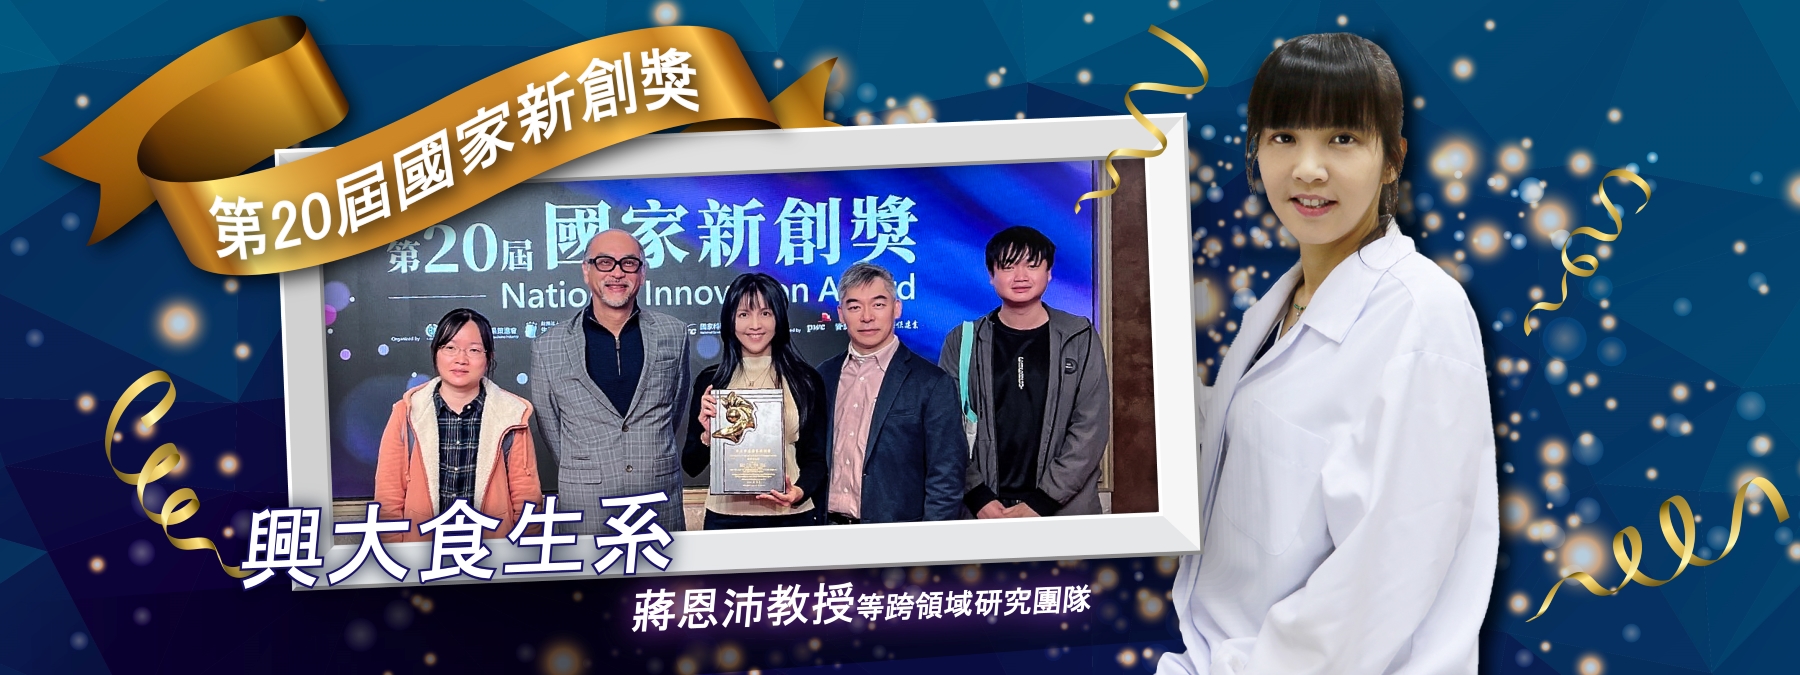 狂賀本院食生系蔣恩沛團隊 榮獲第二十屆國家新創獎！